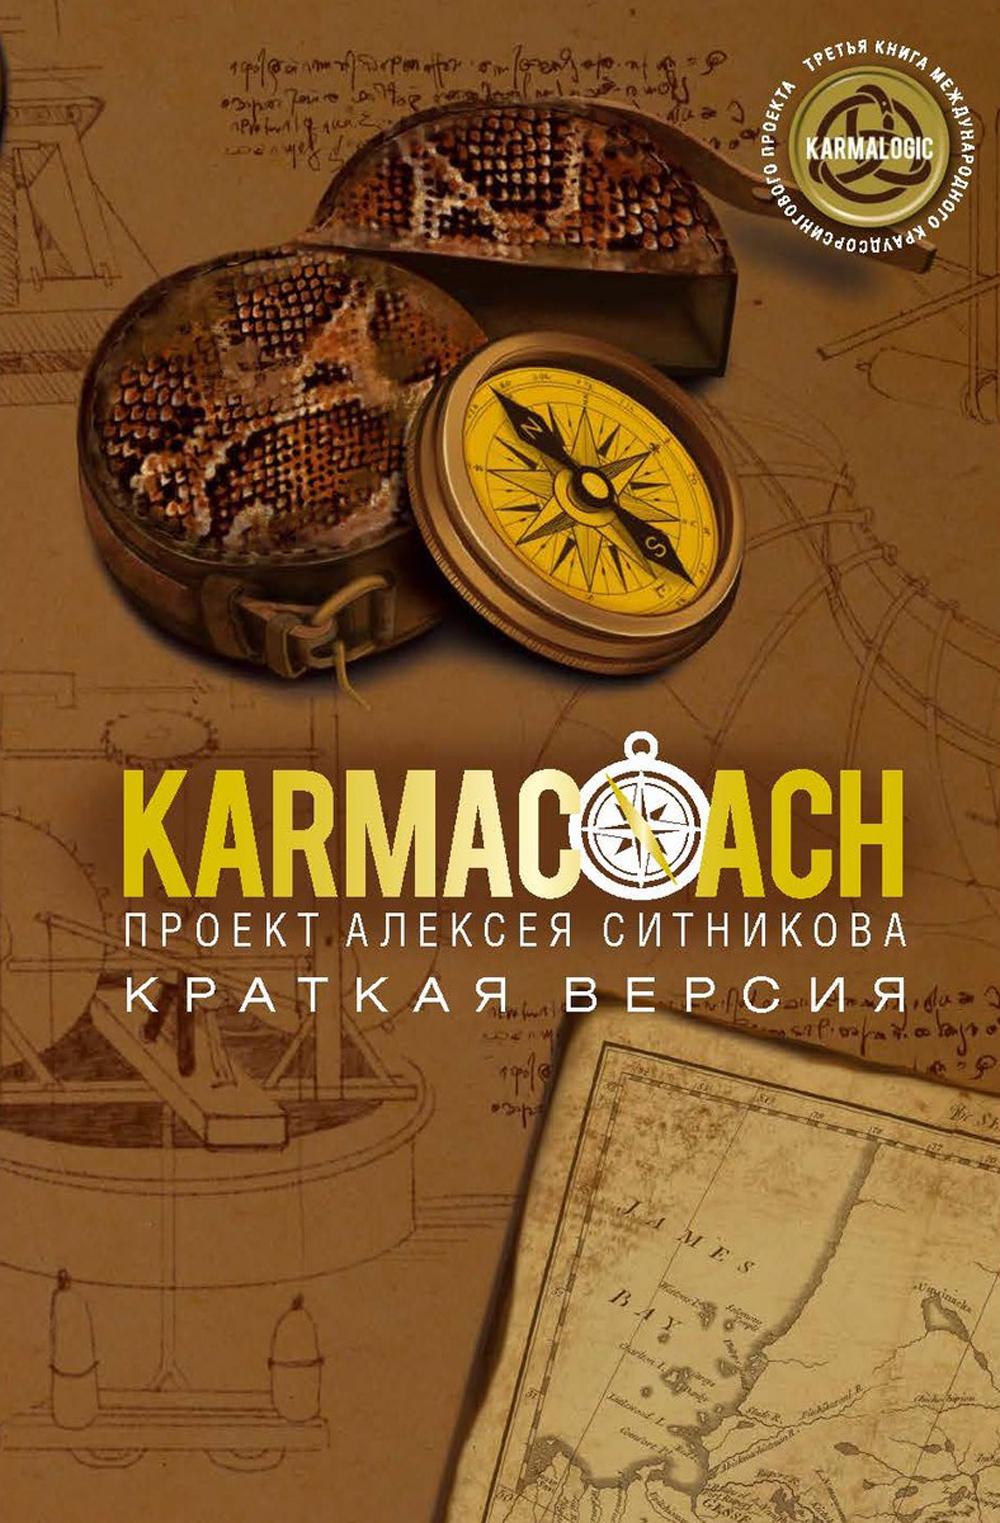 KARMACOACH  